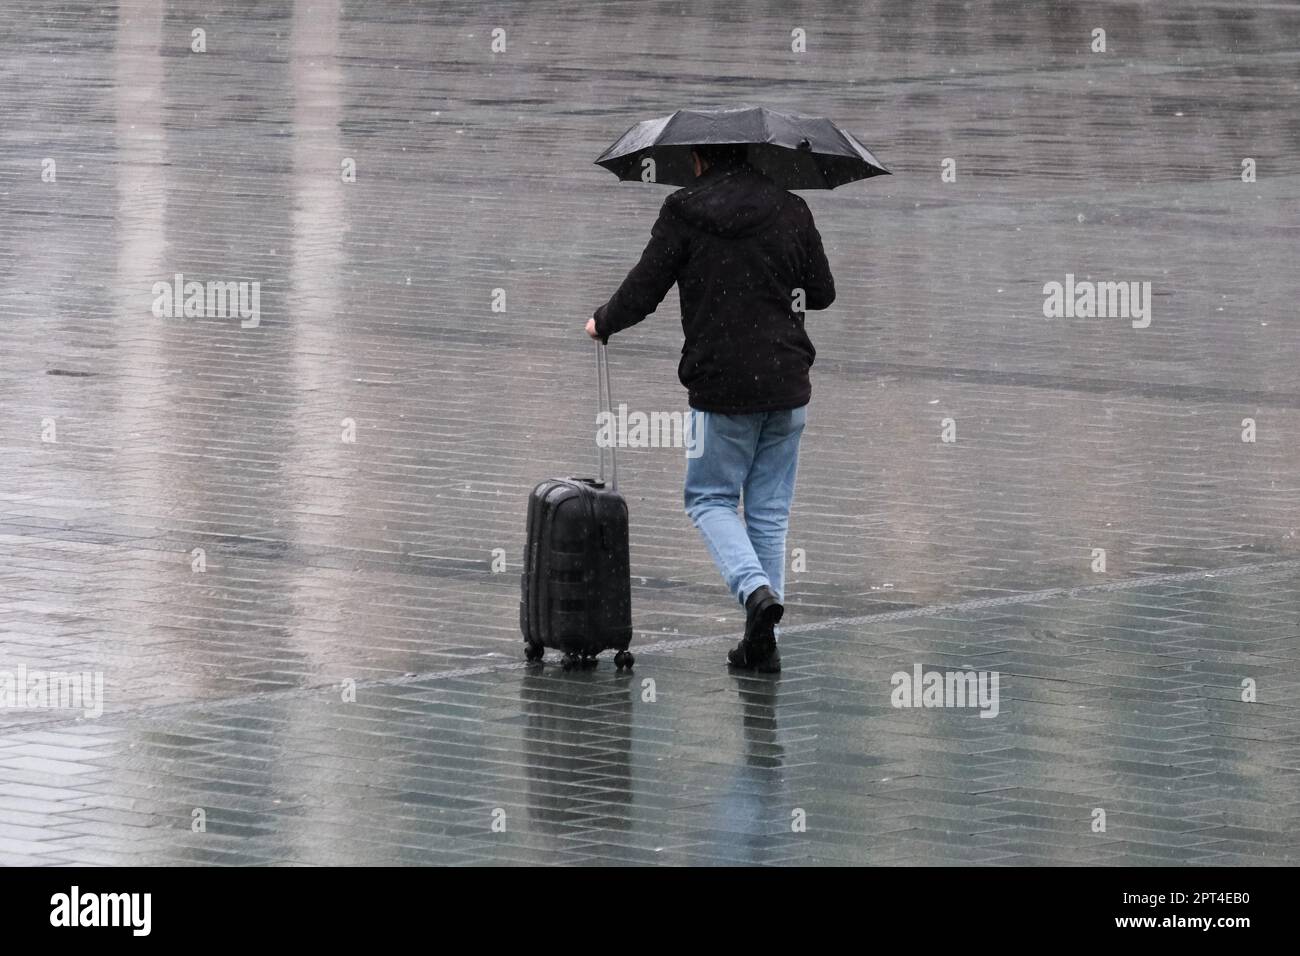 Nahaufnahme Mann hält Regenschirm unter Regen und hat Koffer, der auf der Rückseite läuft, und kein Gesicht und keine Reflexion auf dem Boden. Herbstkonzept für Regenurlaub. Stockfoto